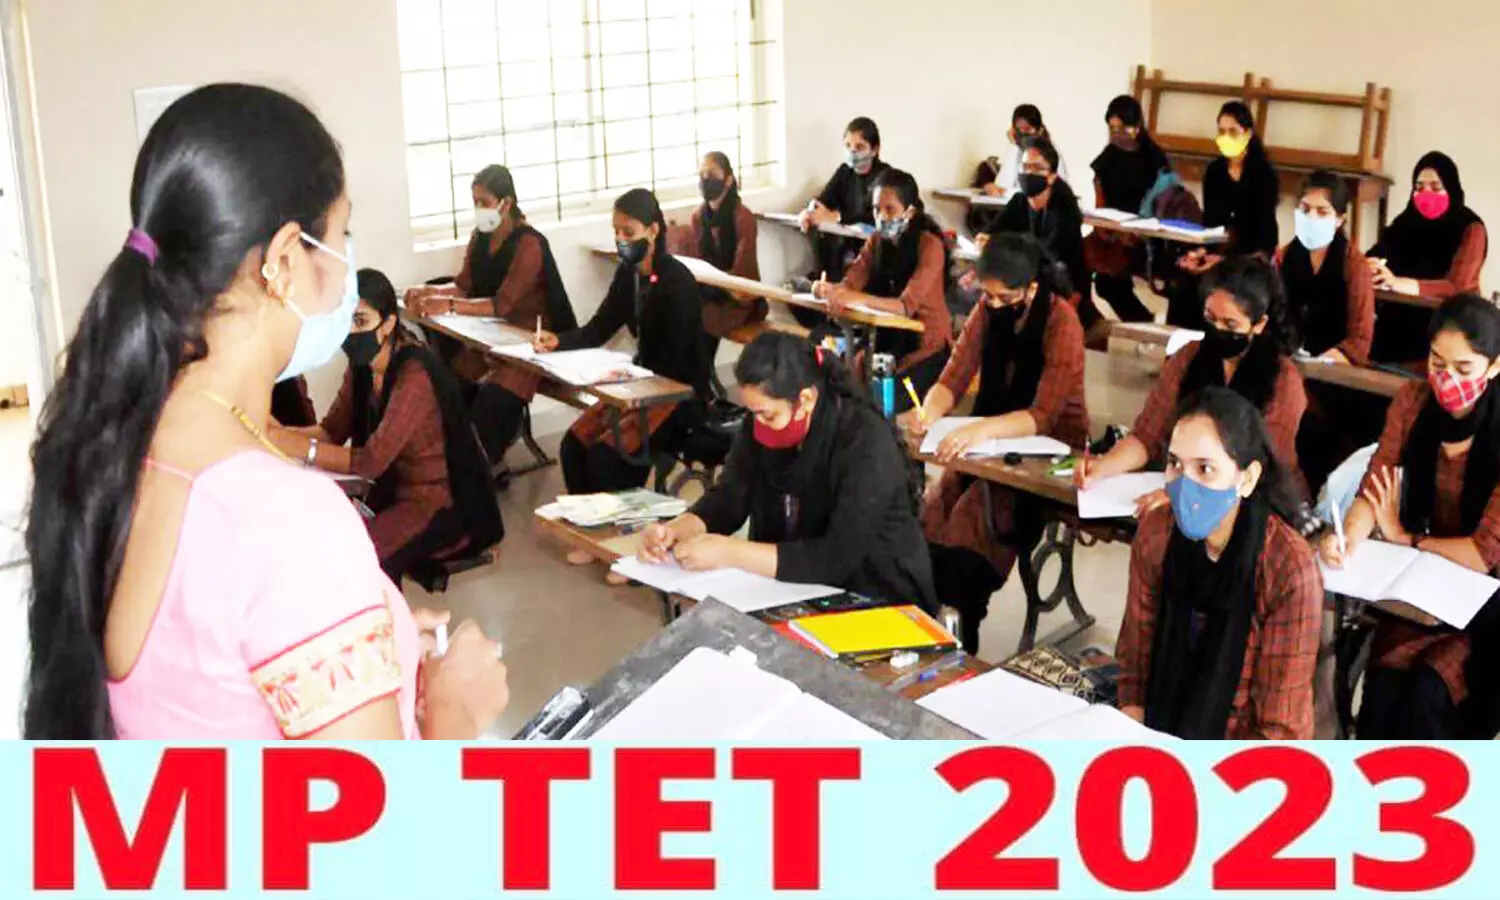 MP TET 2023: मध्यप्रदेश मिडिल स्कूल टीचर एलिजिबिलिटी टेस्ट के लिए आवेदन प्रक्रिया शुरू, कब होगी परीक्षा जान लें